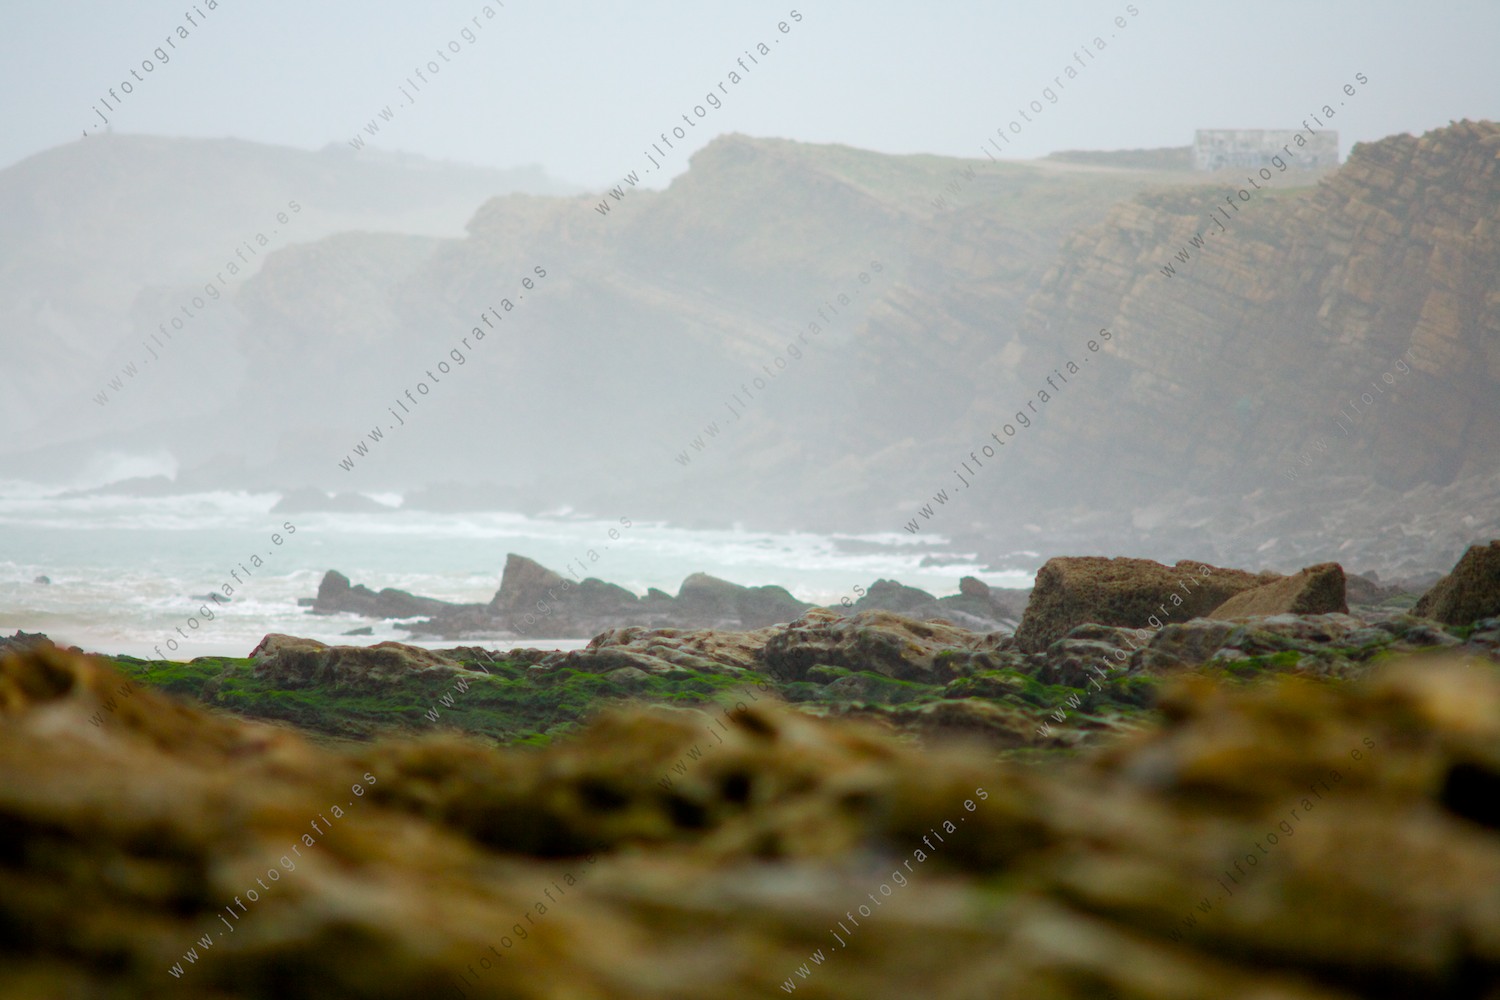 La costa quebrada de Liencres en Cantabria, es un lugar maravilloso para la fotografía de paisajes